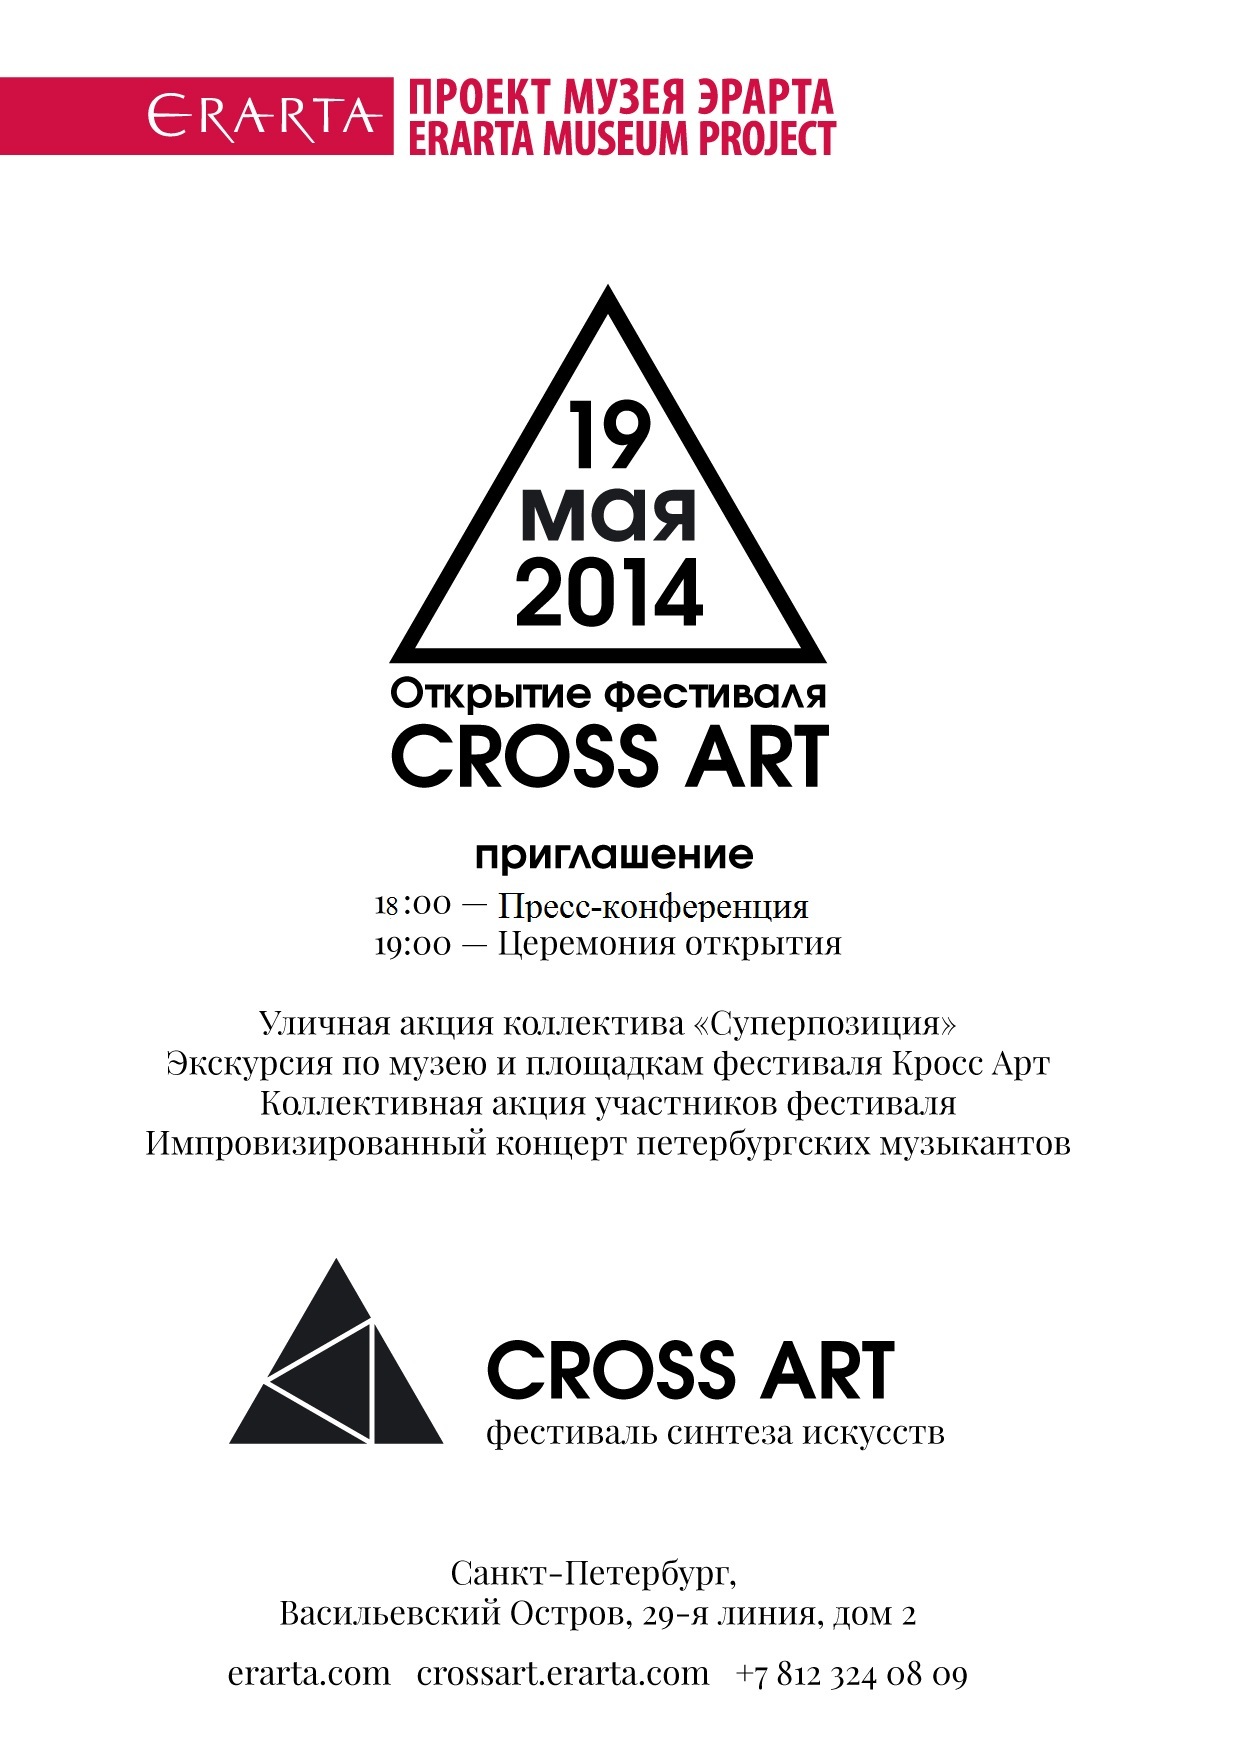 Cross Art